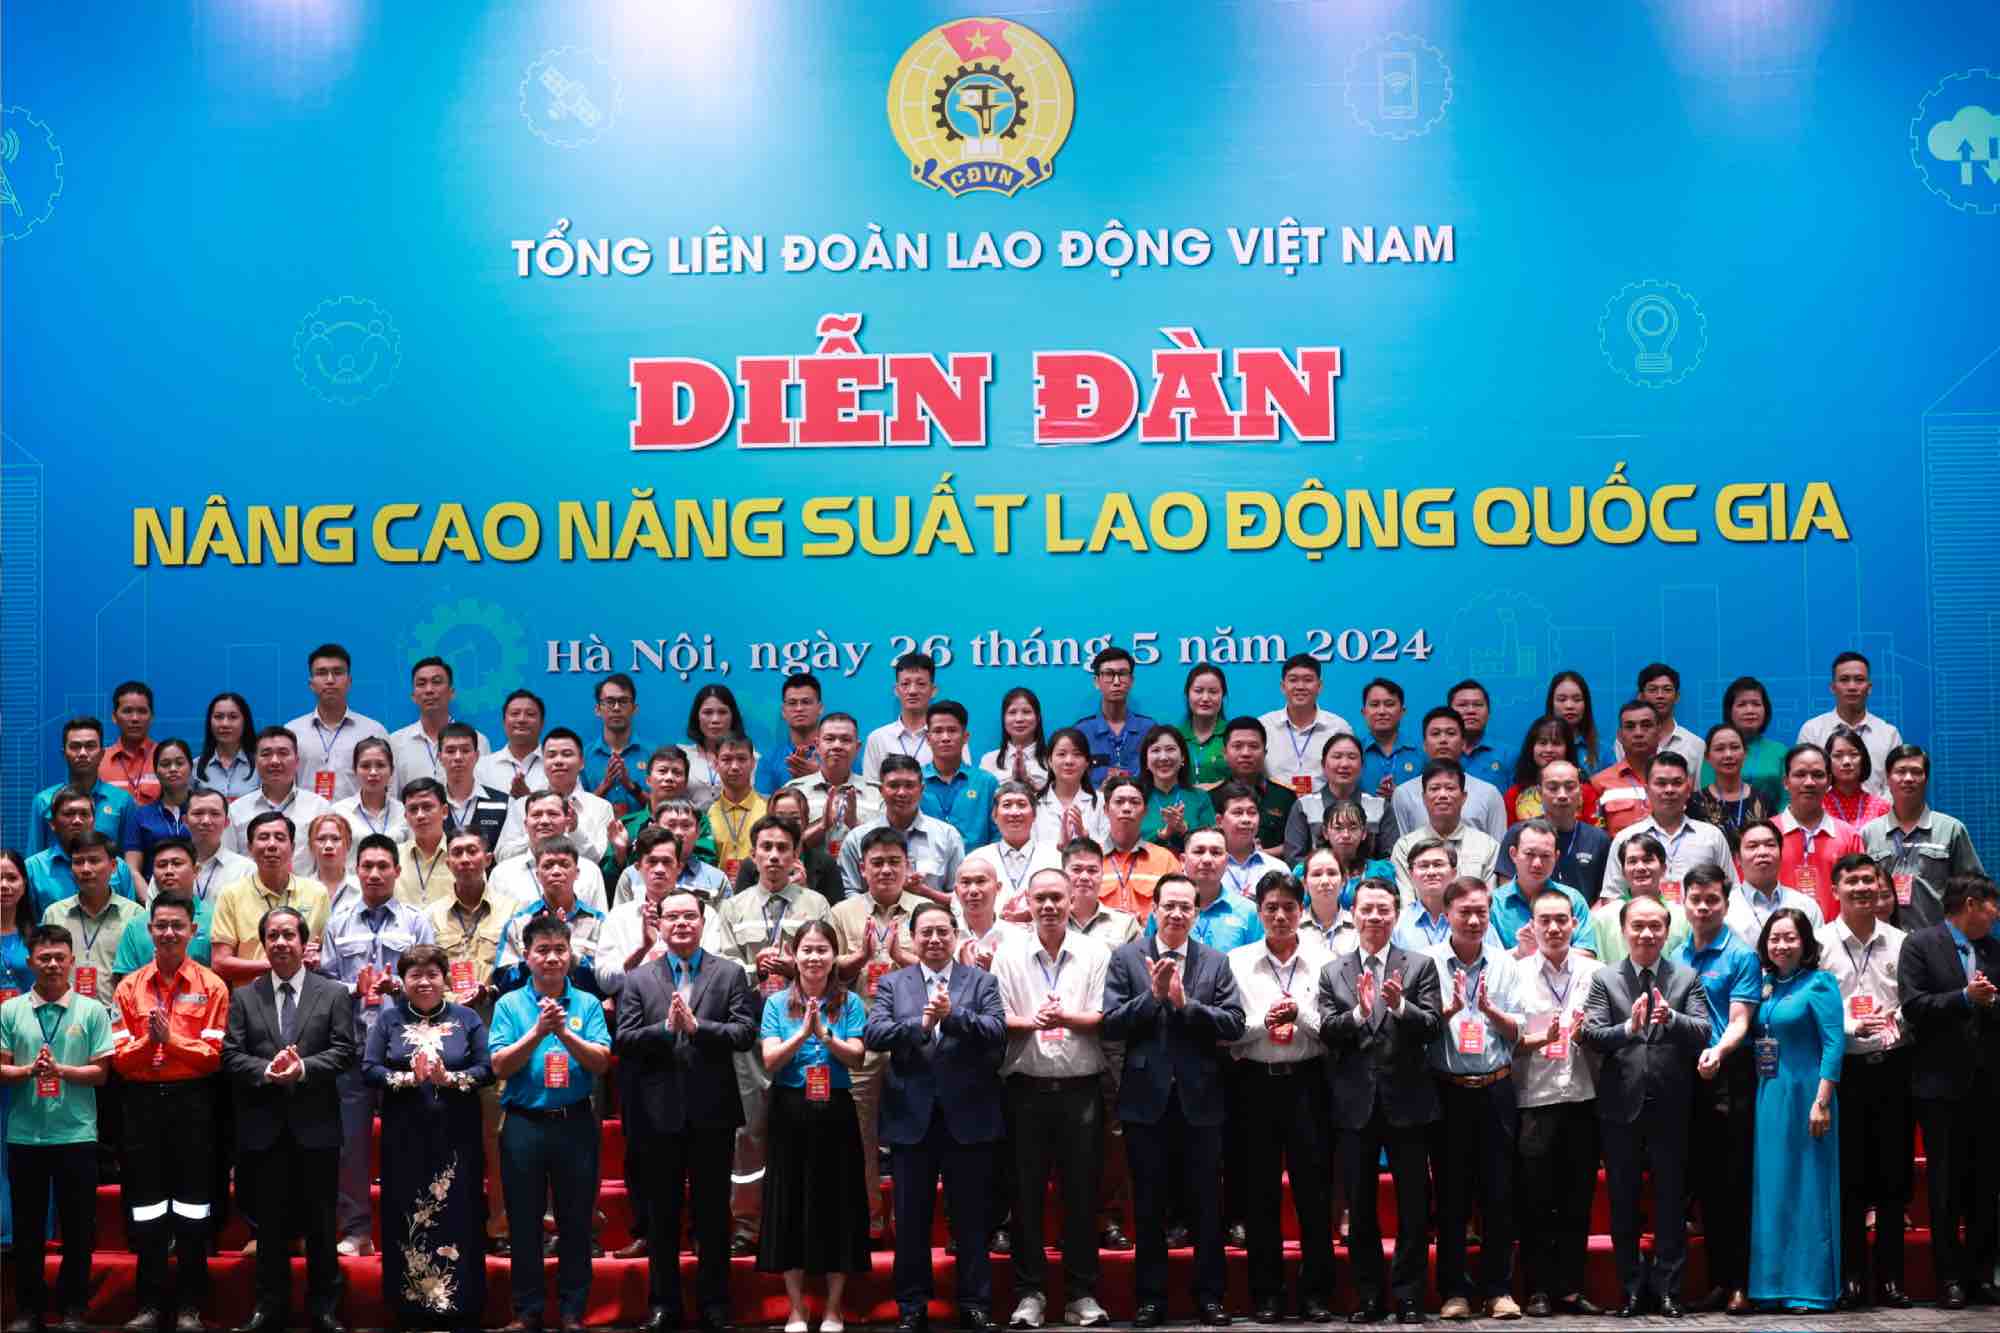 Đoàn viên Công đoàn Tổng công ty Bưu điện Việt Nam tham dự Diễn đàn “Nâng cao năng suất lao động quốc gia năm 2024”